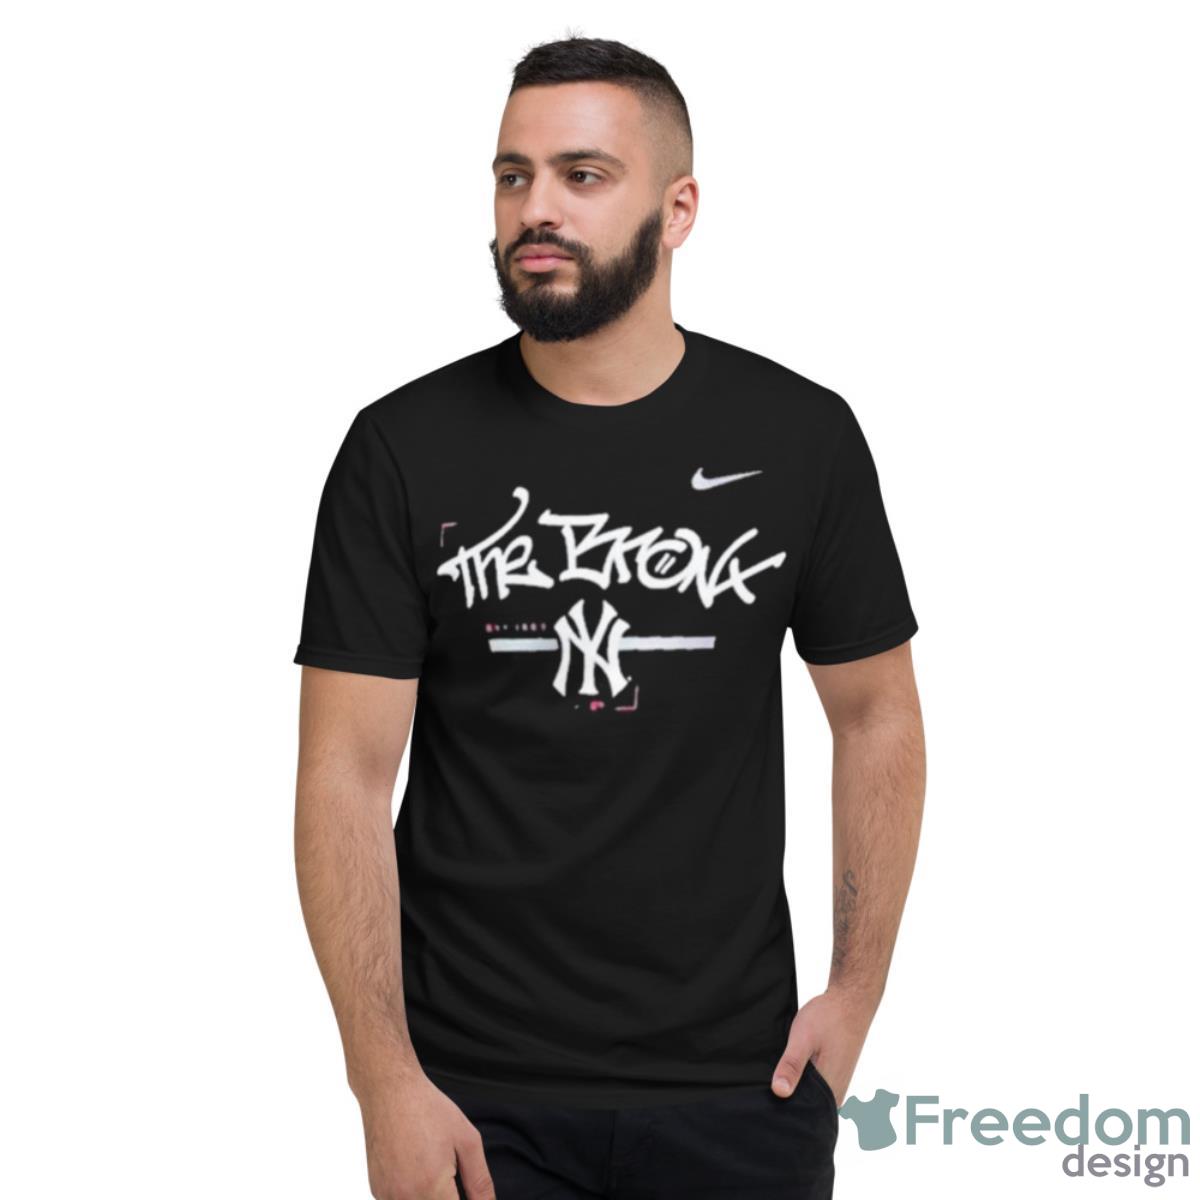 New York Yankees Nike The Bronx Shirt - Freedomdesign